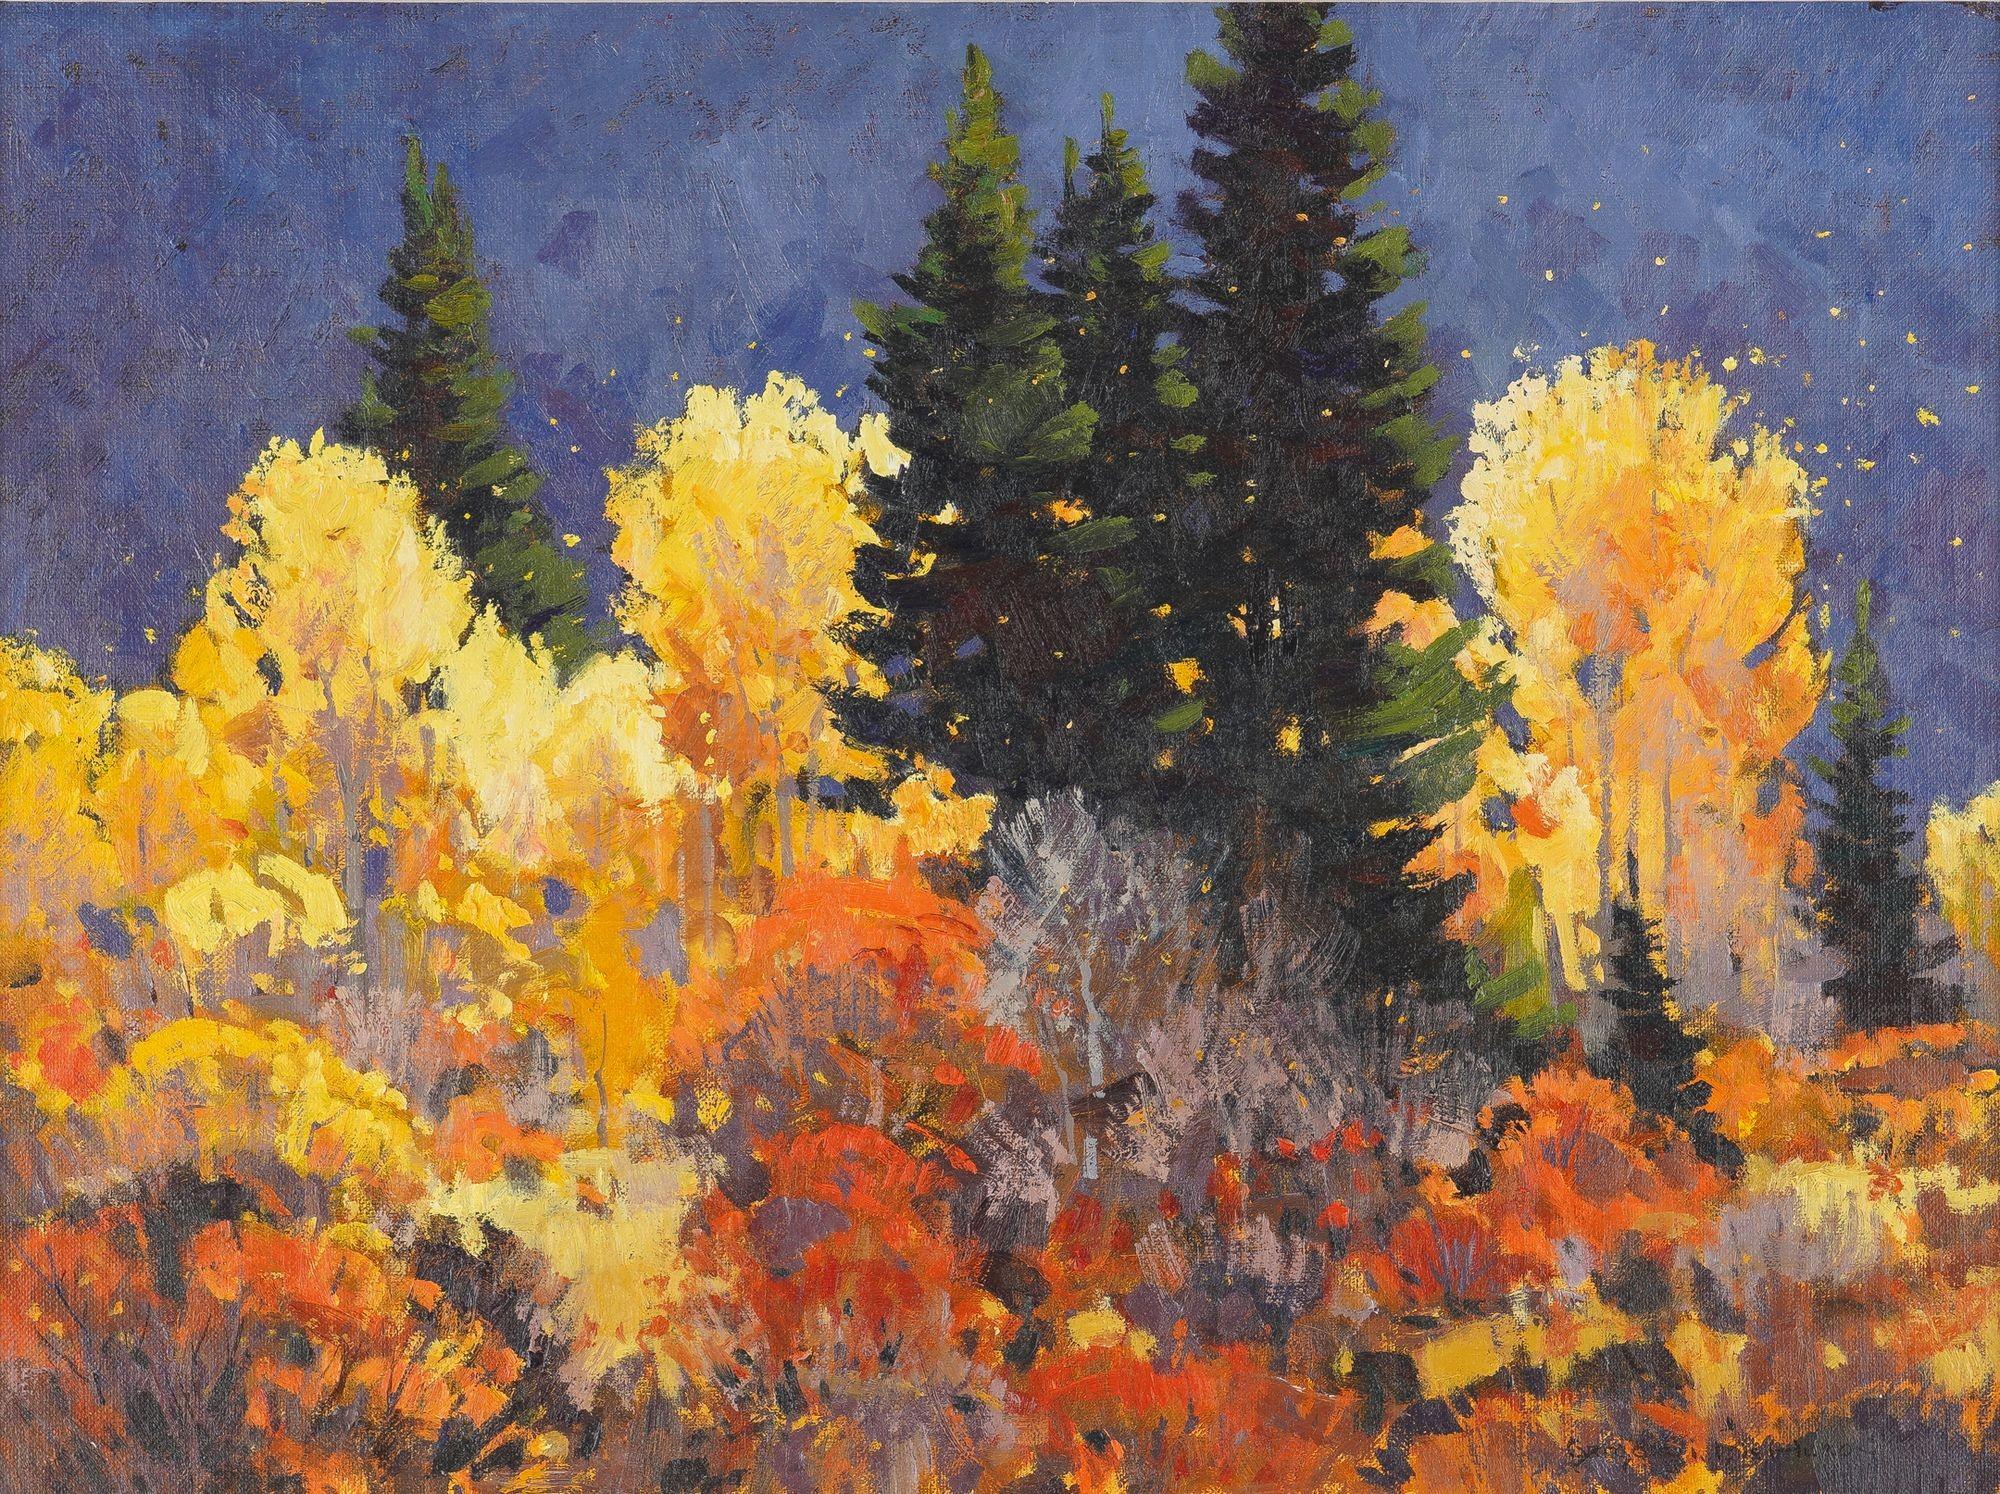 Vue d'un paysage recadré de pins et de trembles inondés de jaunes et de rouges automnaux, associés à un ciel crépusculaire d'un bleu profond. Né en 1945, McHuron a obtenu un diplôme d'art à l'université d'État de l'Oregon et a beaucoup étudié avec